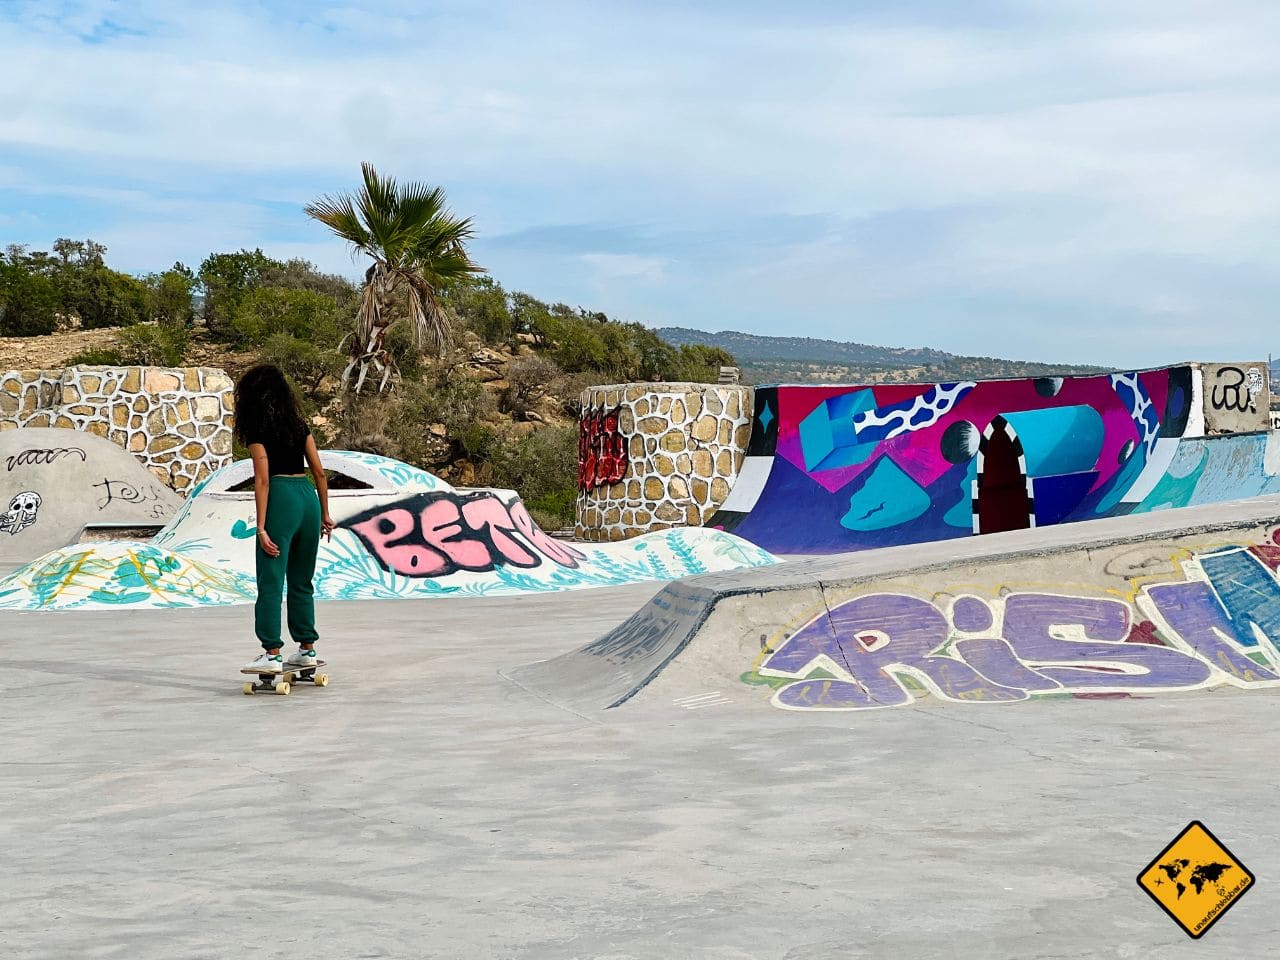 Skateplatz Taghazout Marokko